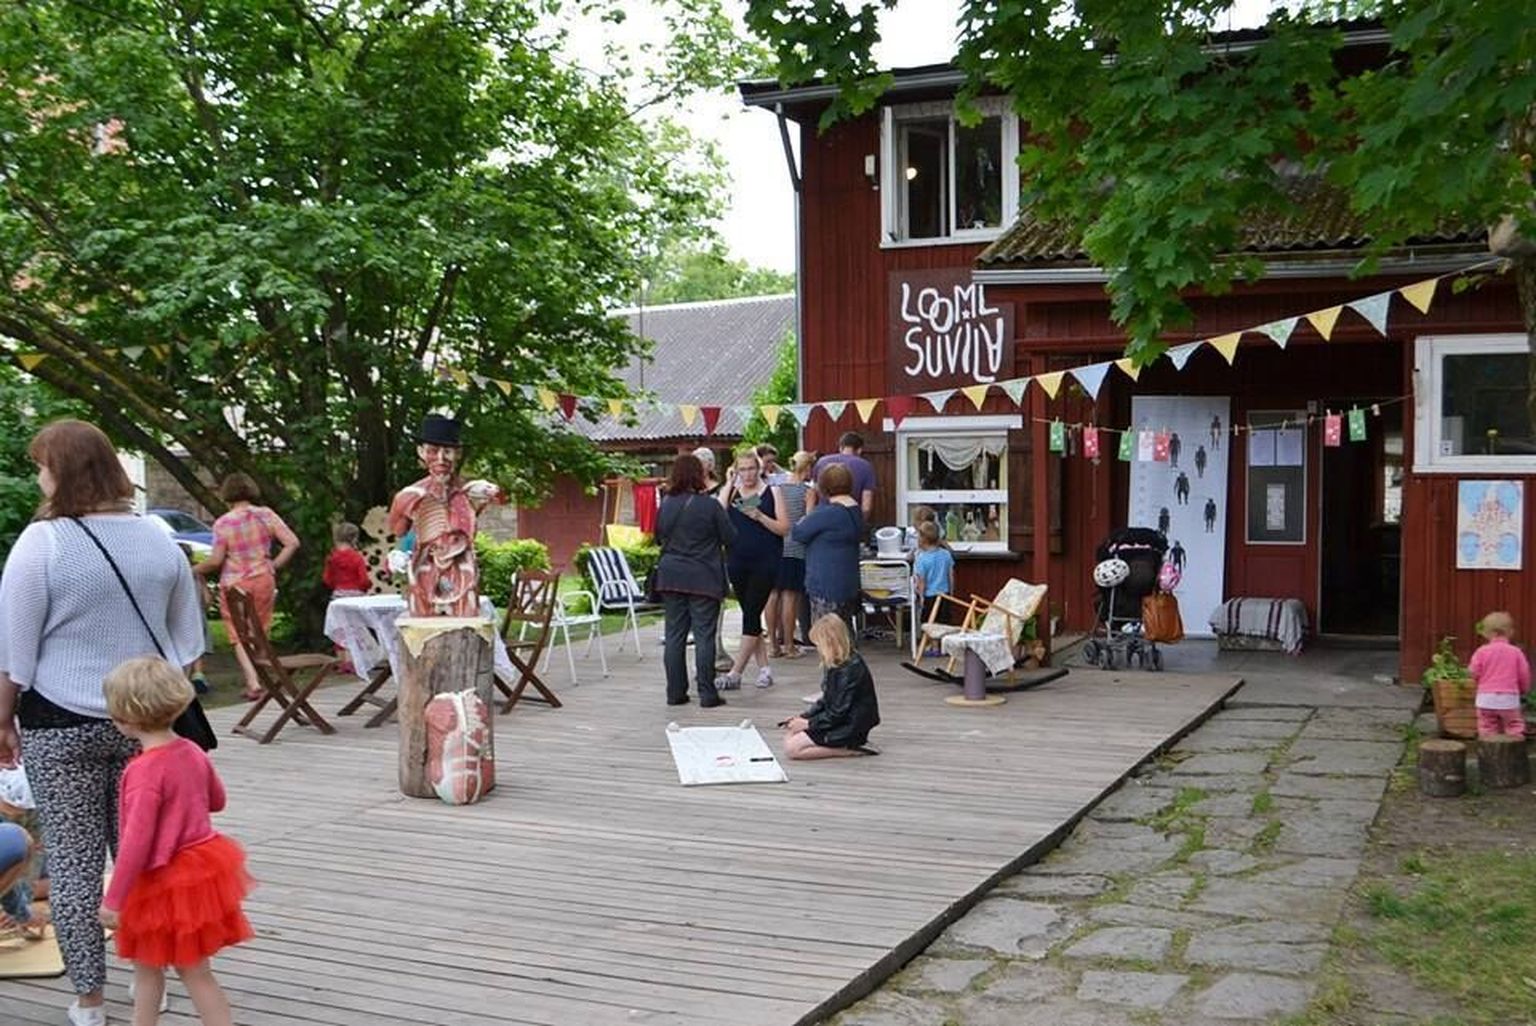 Laadad on loomesuvila üheks väljundiks. saab müüa ja osta Saaremaa oma kaupa.
Tervisepäev kutsus kokku hulga huvilisi, noori ja natuke 
vanemaid.
Foto: liise k